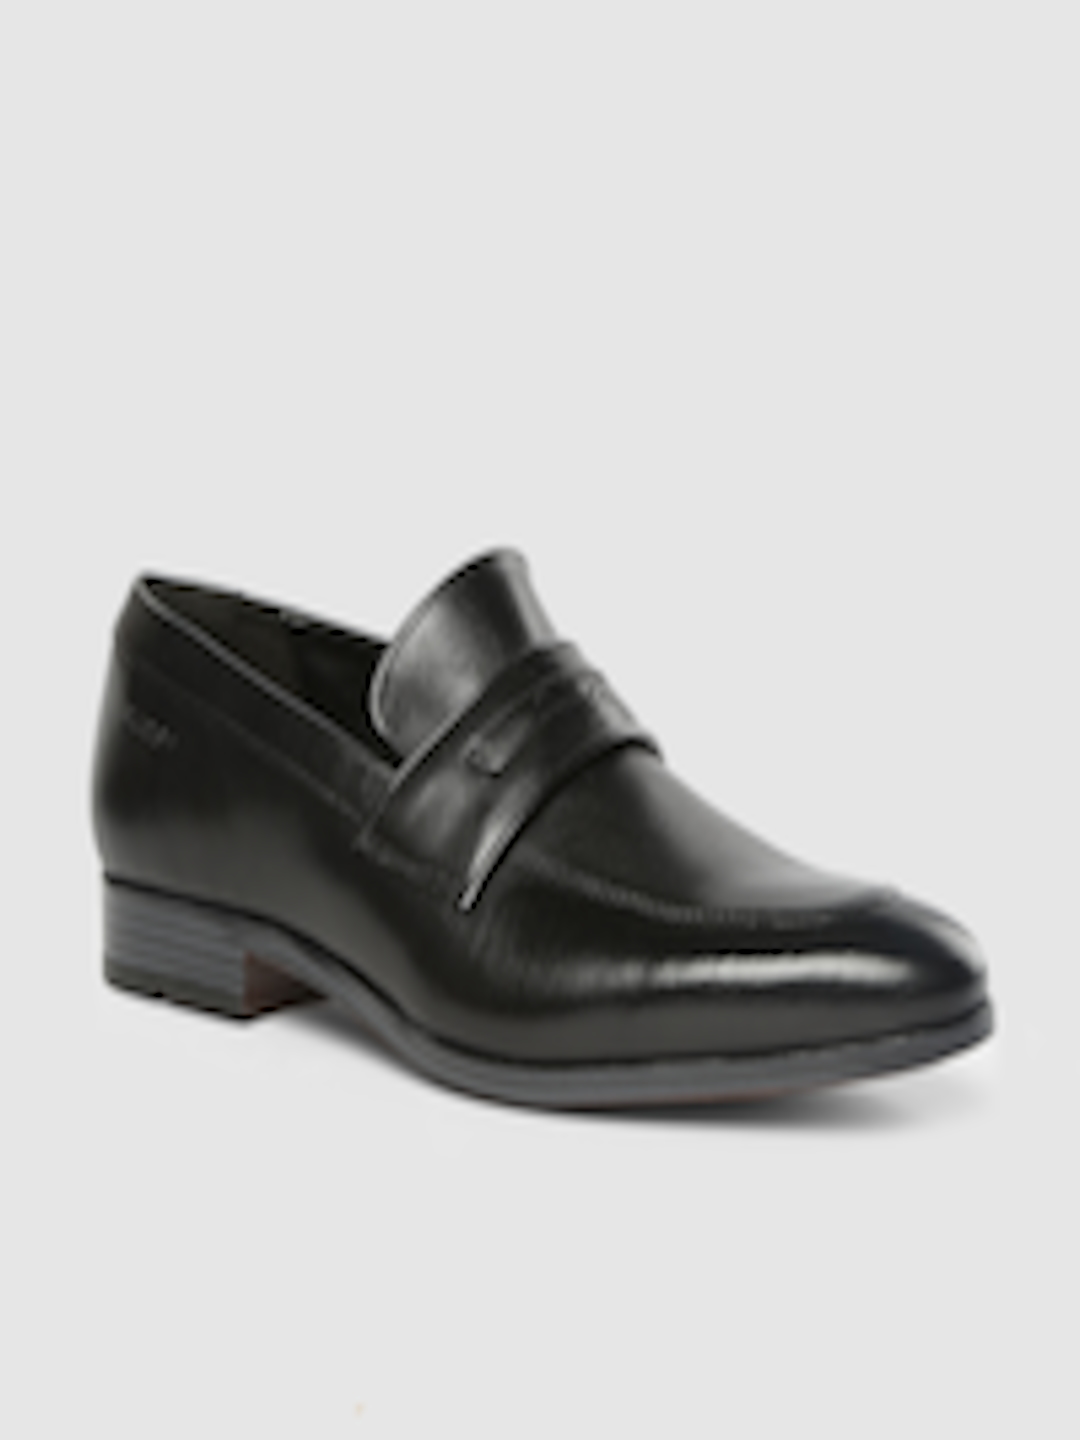 Buy Ruosh Men Black Leather Formal Slip On Shoes - Formal Shoes for Men ...